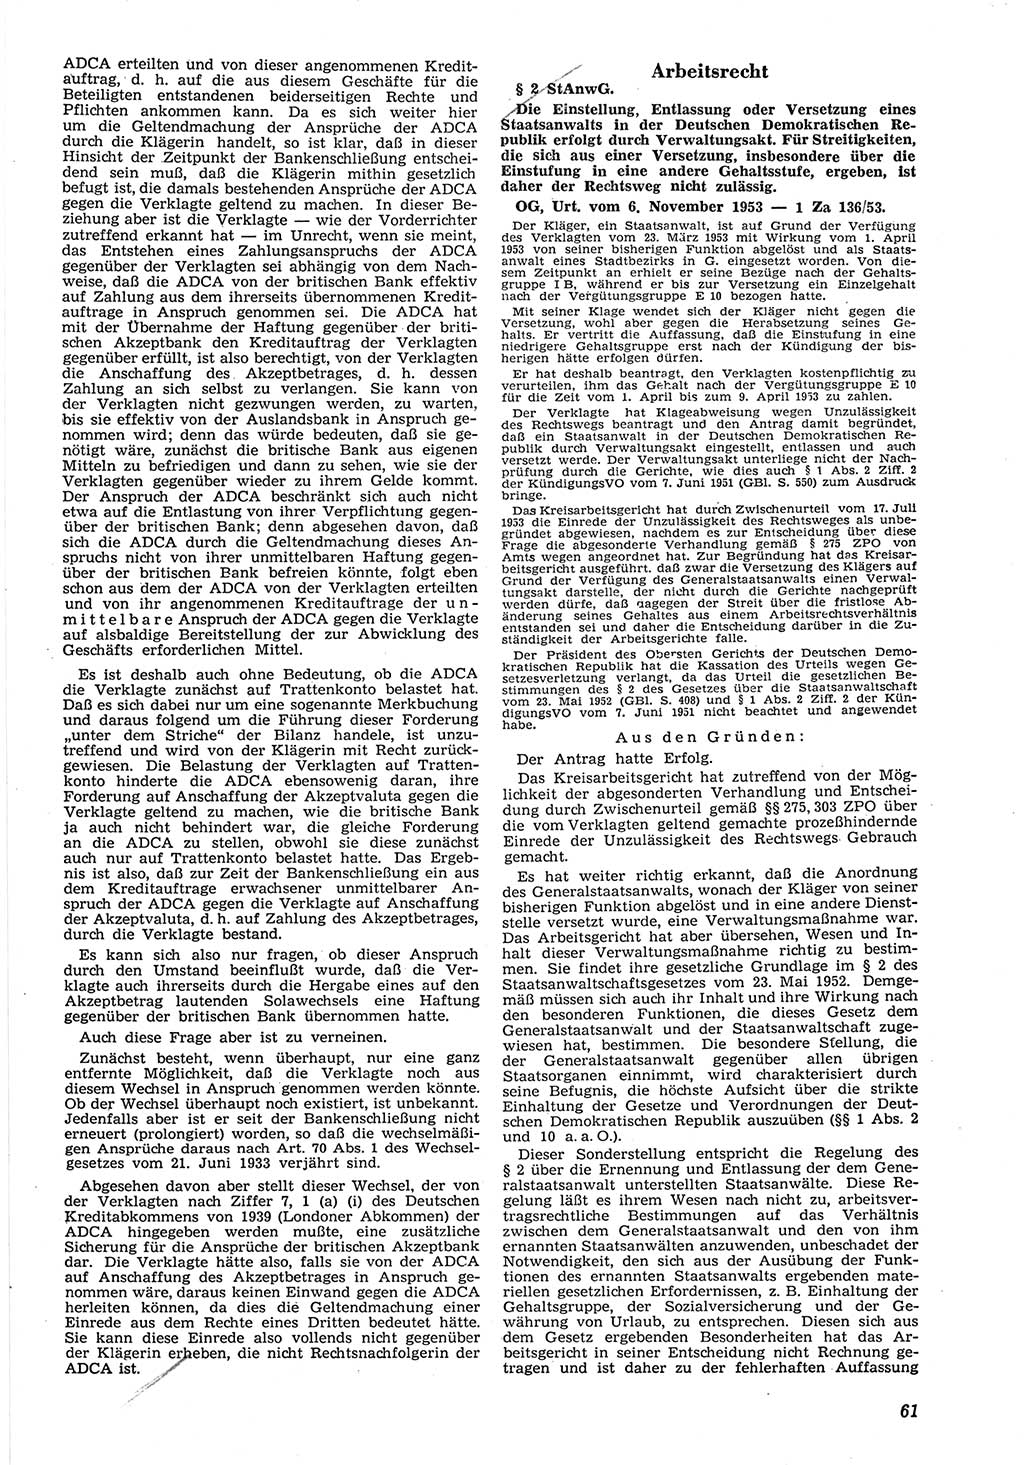 Neue Justiz (NJ), Zeitschrift für Recht und Rechtswissenschaft [Deutsche Demokratische Republik (DDR)], 8. Jahrgang 1954, Seite 61 (NJ DDR 1954, S. 61)